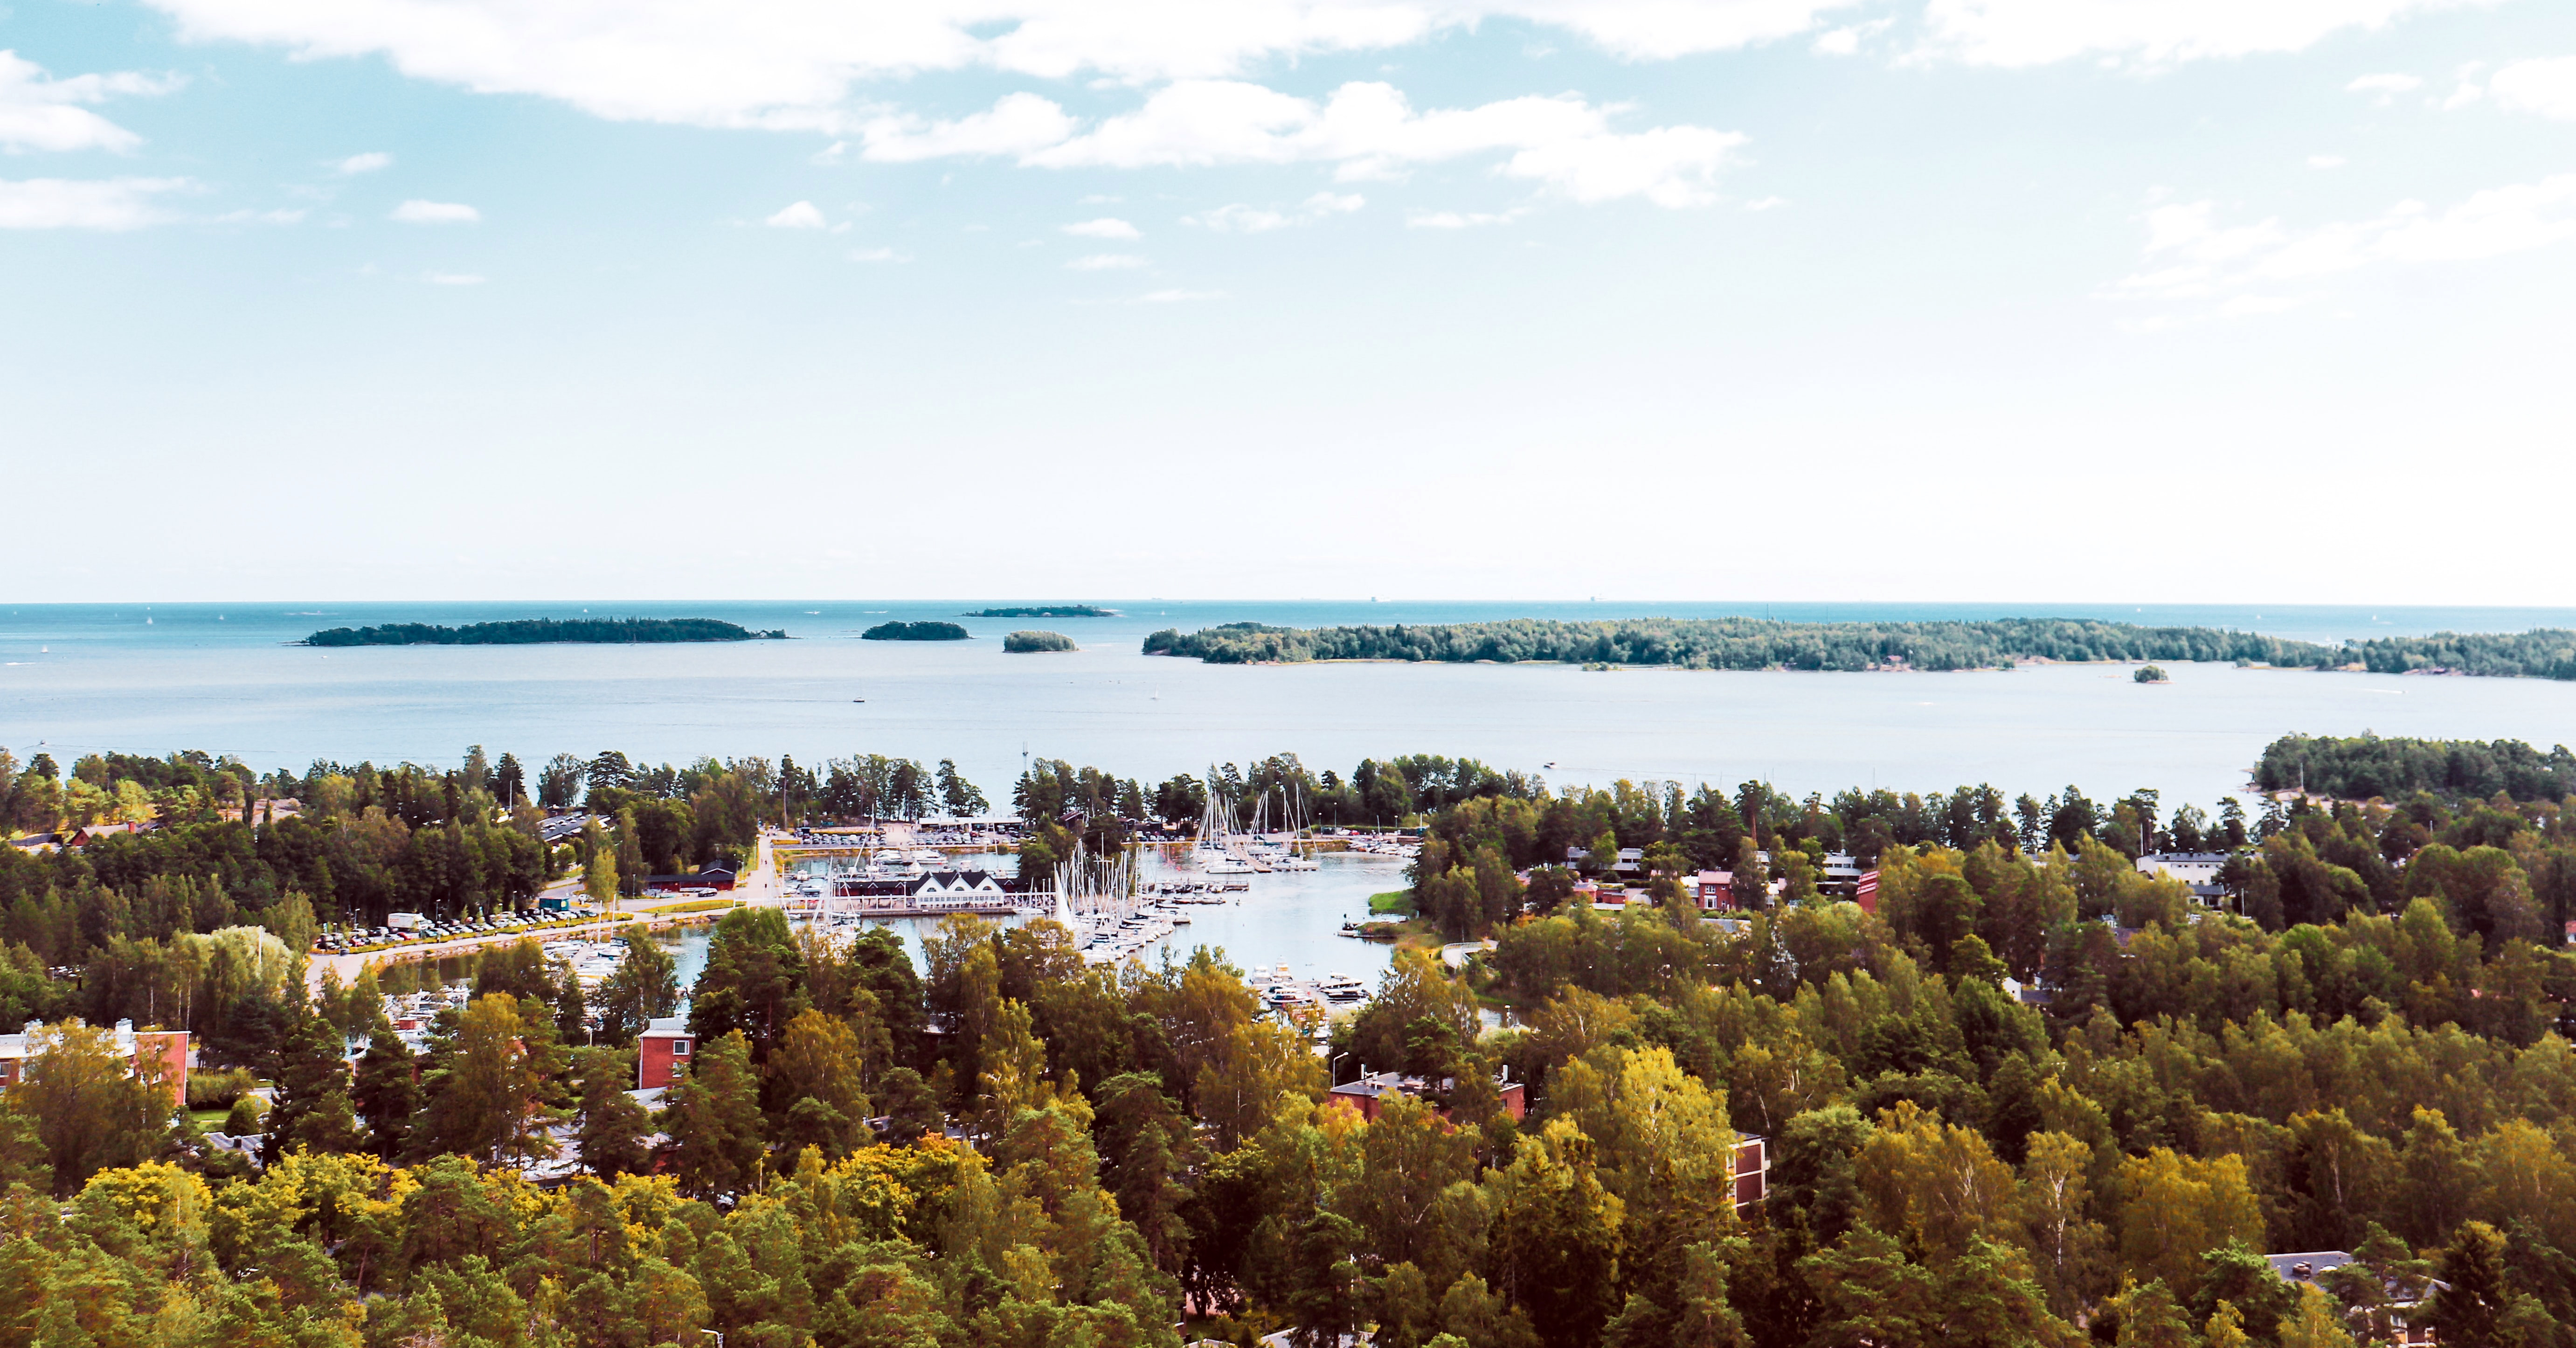 Espoon nähtävyydet autolla – Uusimaa ja Espoo tarjoavat elämyksiä kaikkina vuodenaikoina